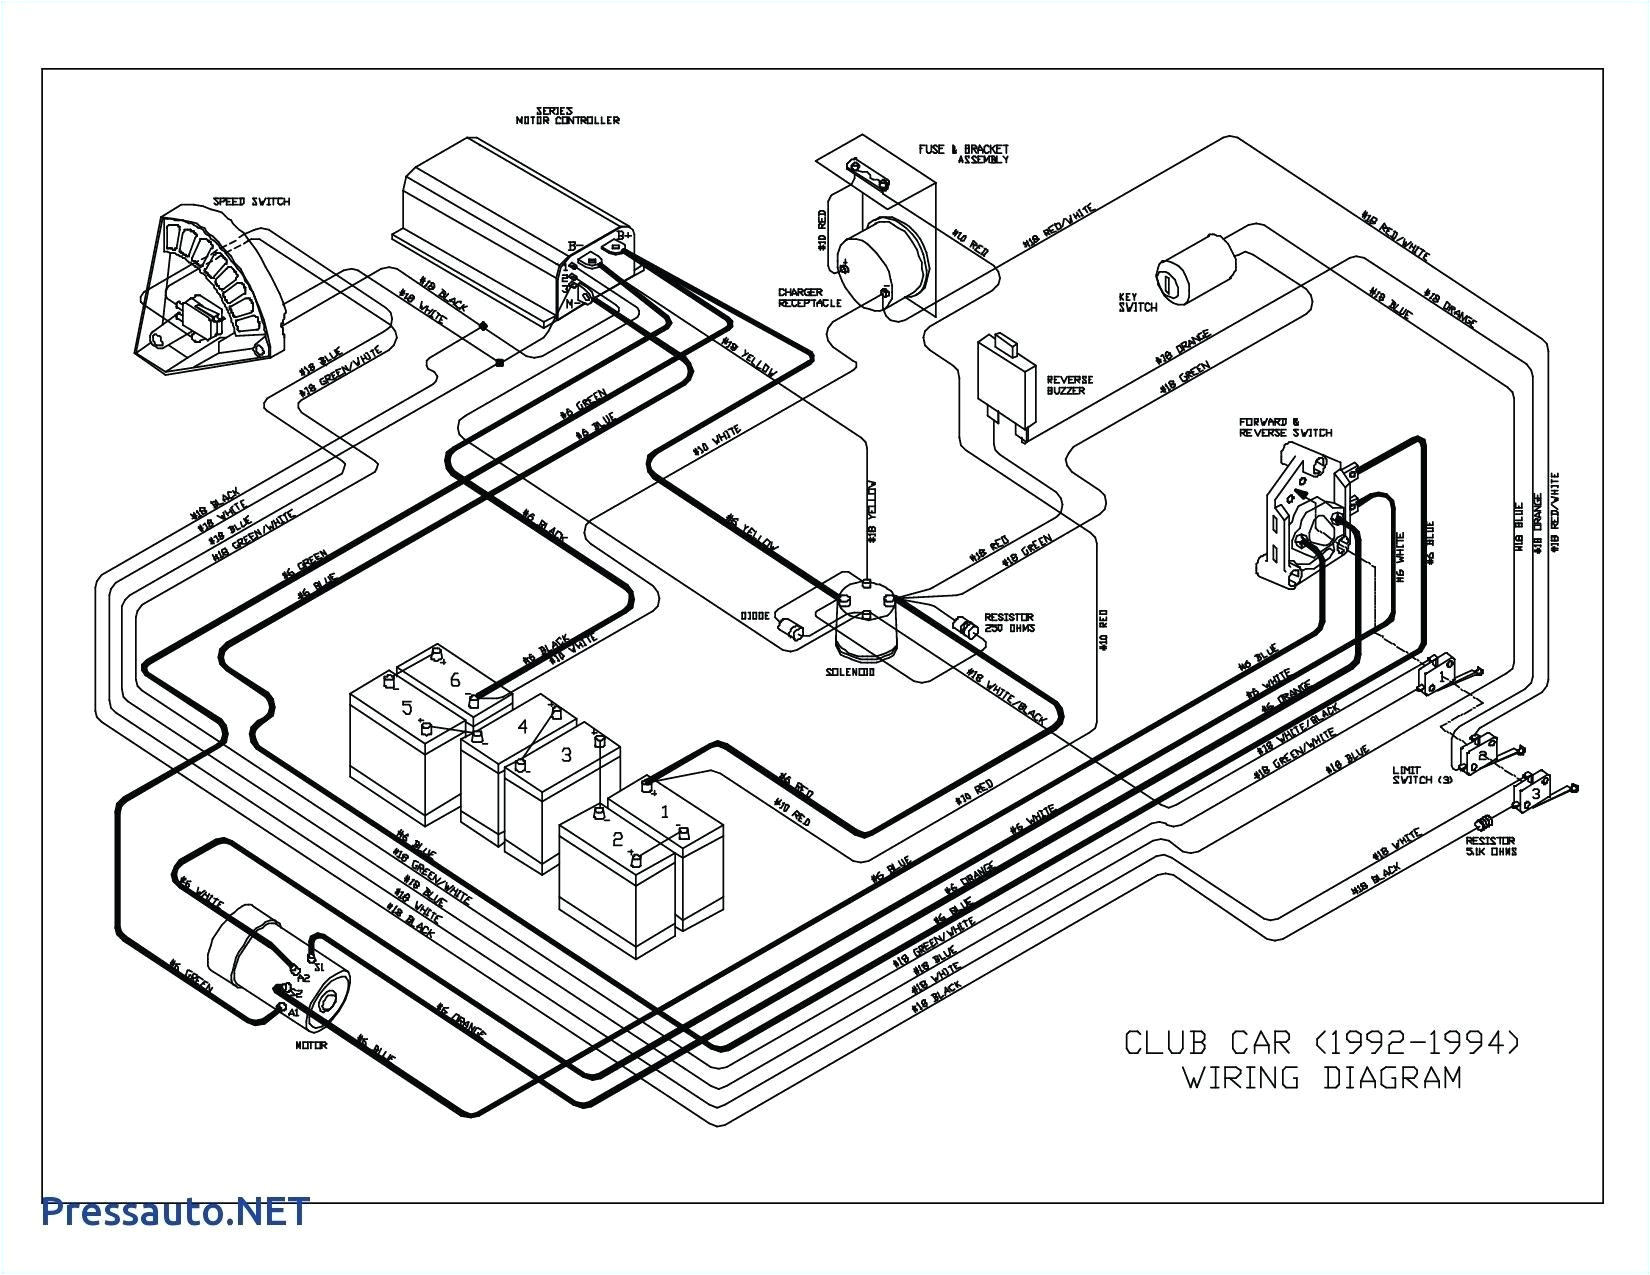 dc club car 36v wiring diagram wiring diagram sys 36v wiring diagram trolling motor 36v wiring diagram